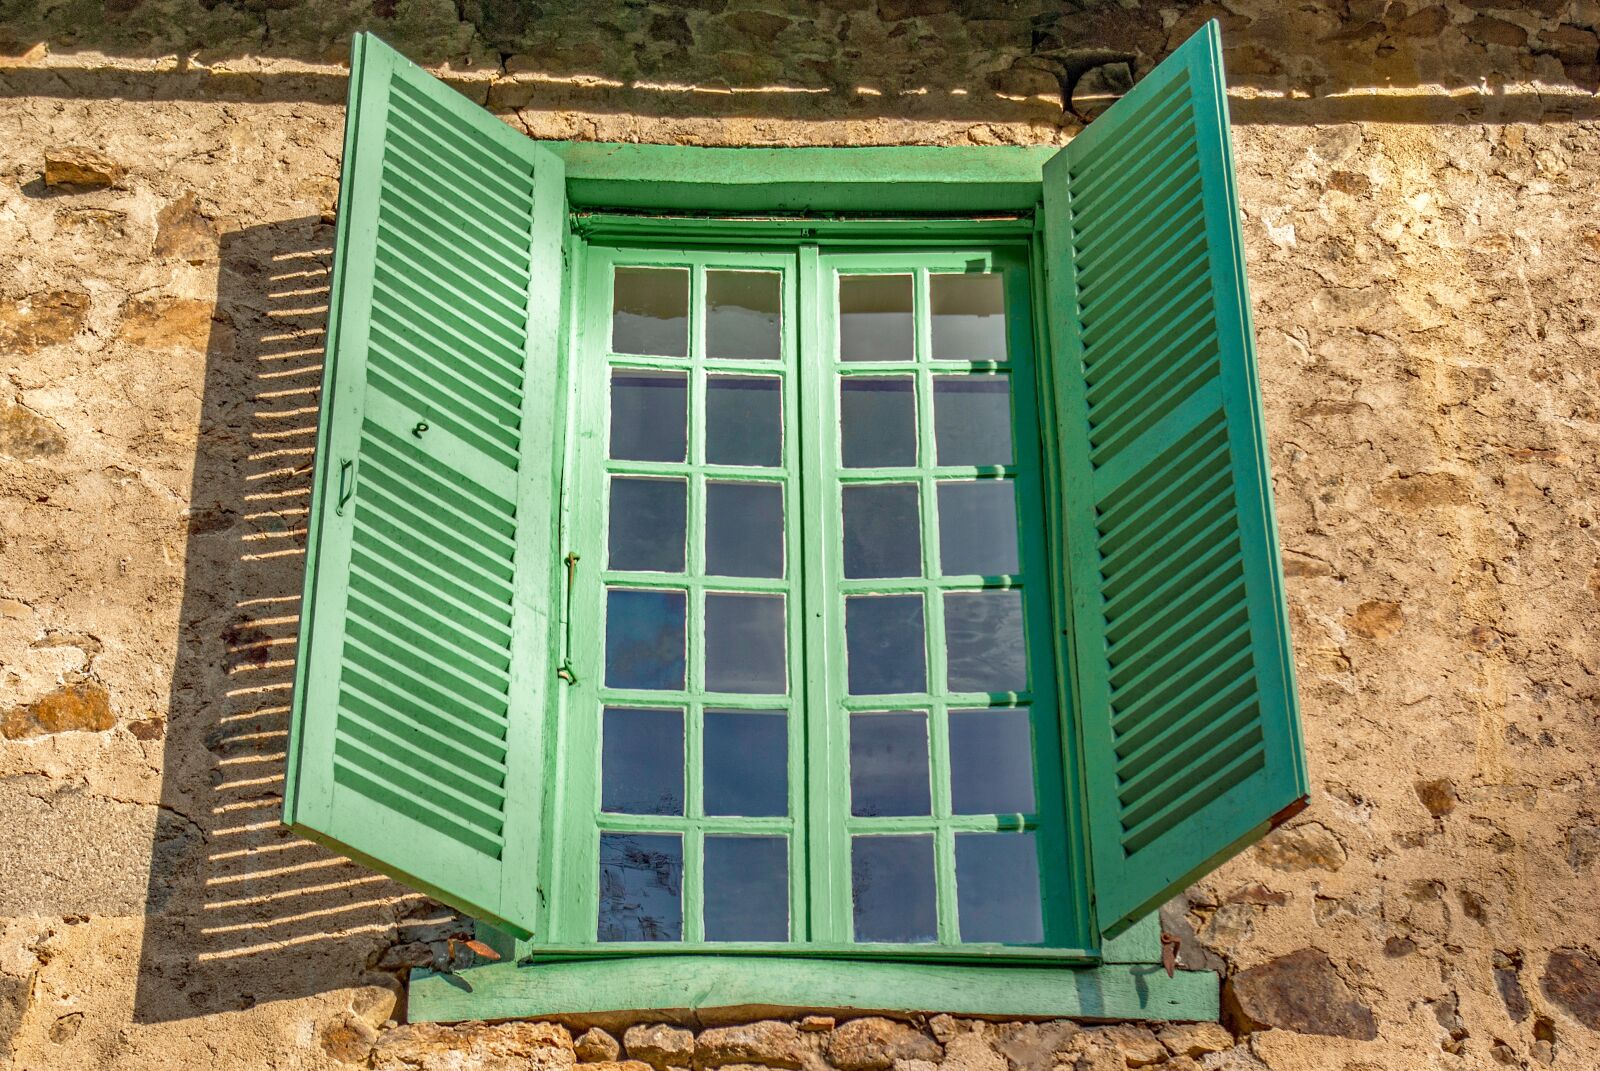 Pentax K10D sample photo. Window, shutter, exterior photography